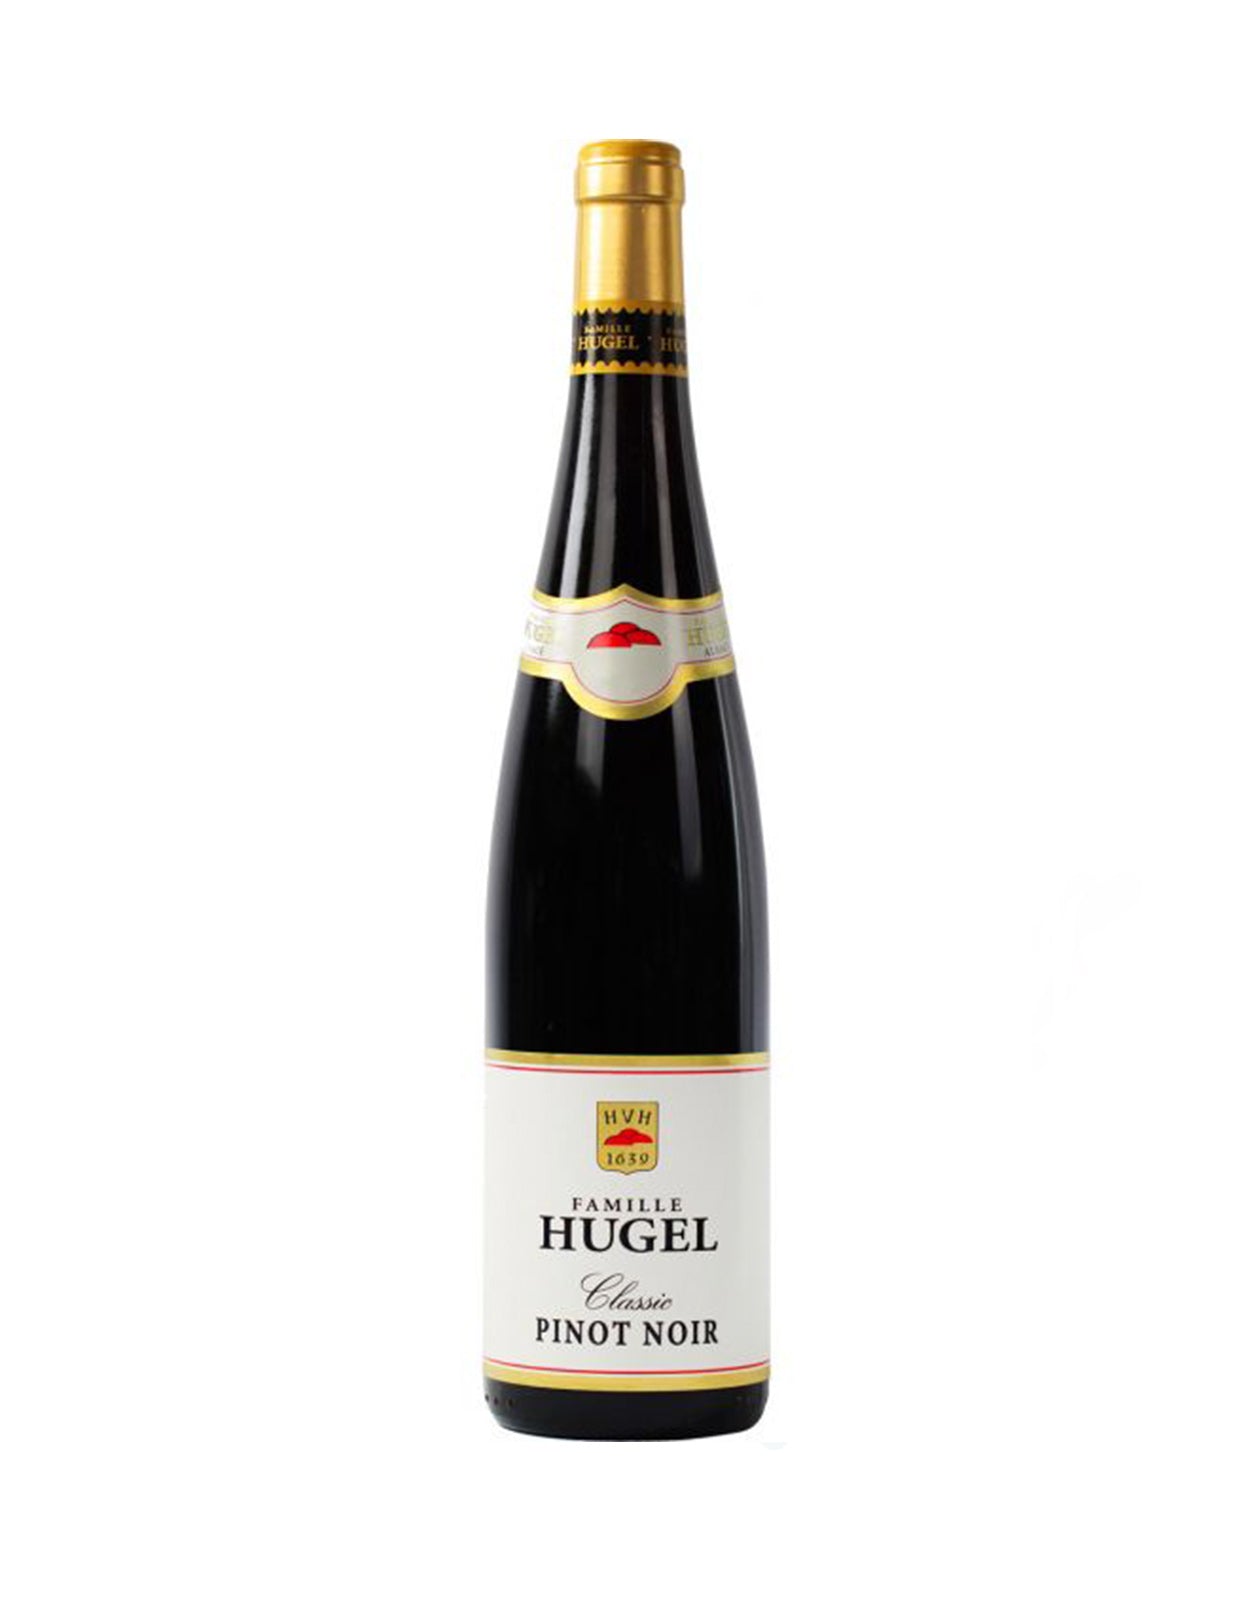 Hugel Pinot Noir Classic 2019